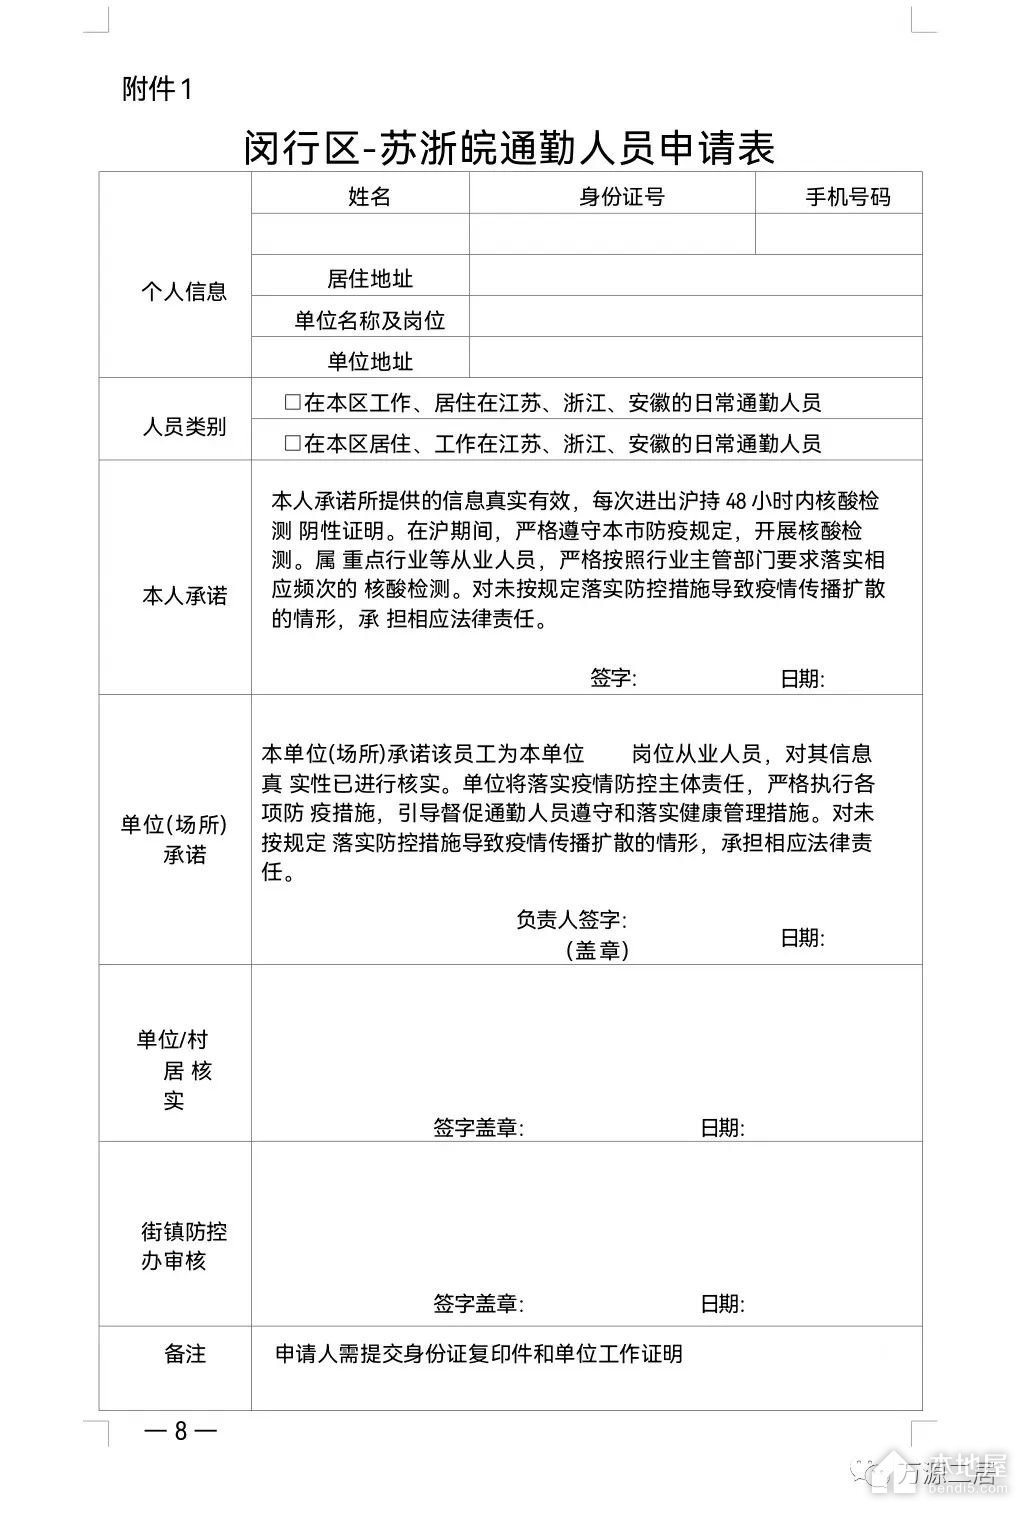 上海通勤人员白名单申请方式与申请流程